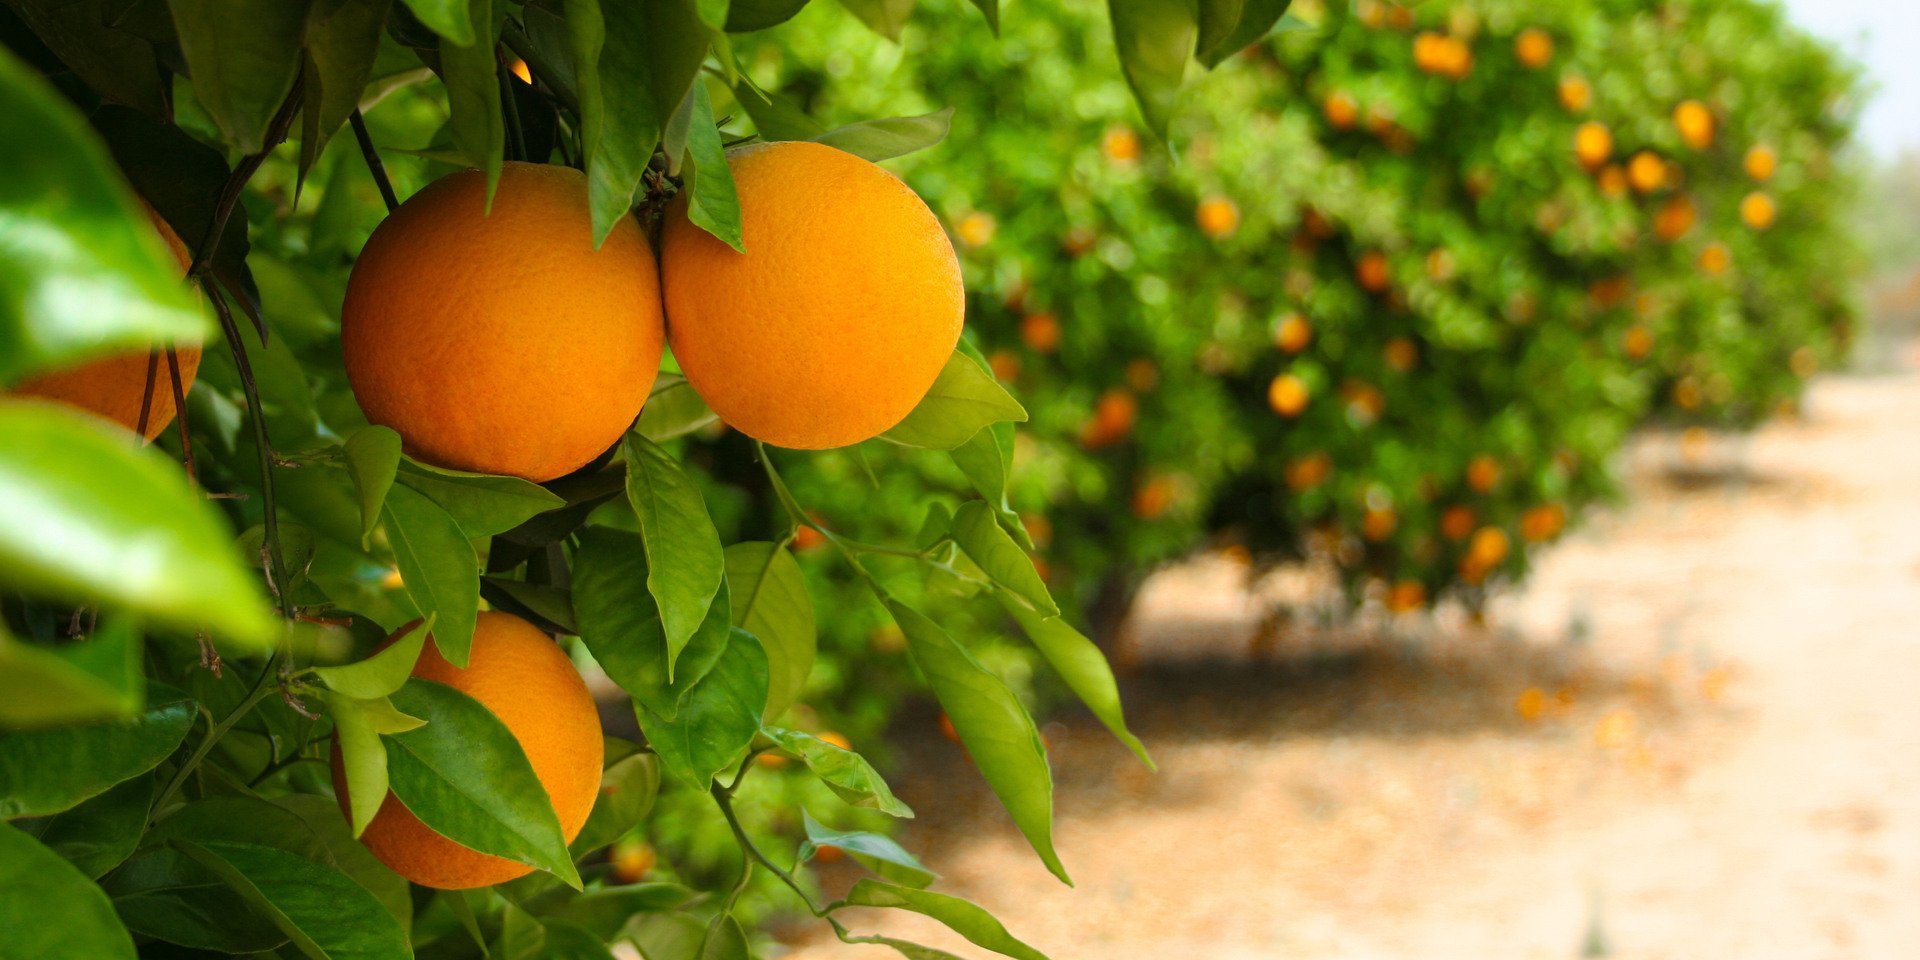 Oranges in orange grove